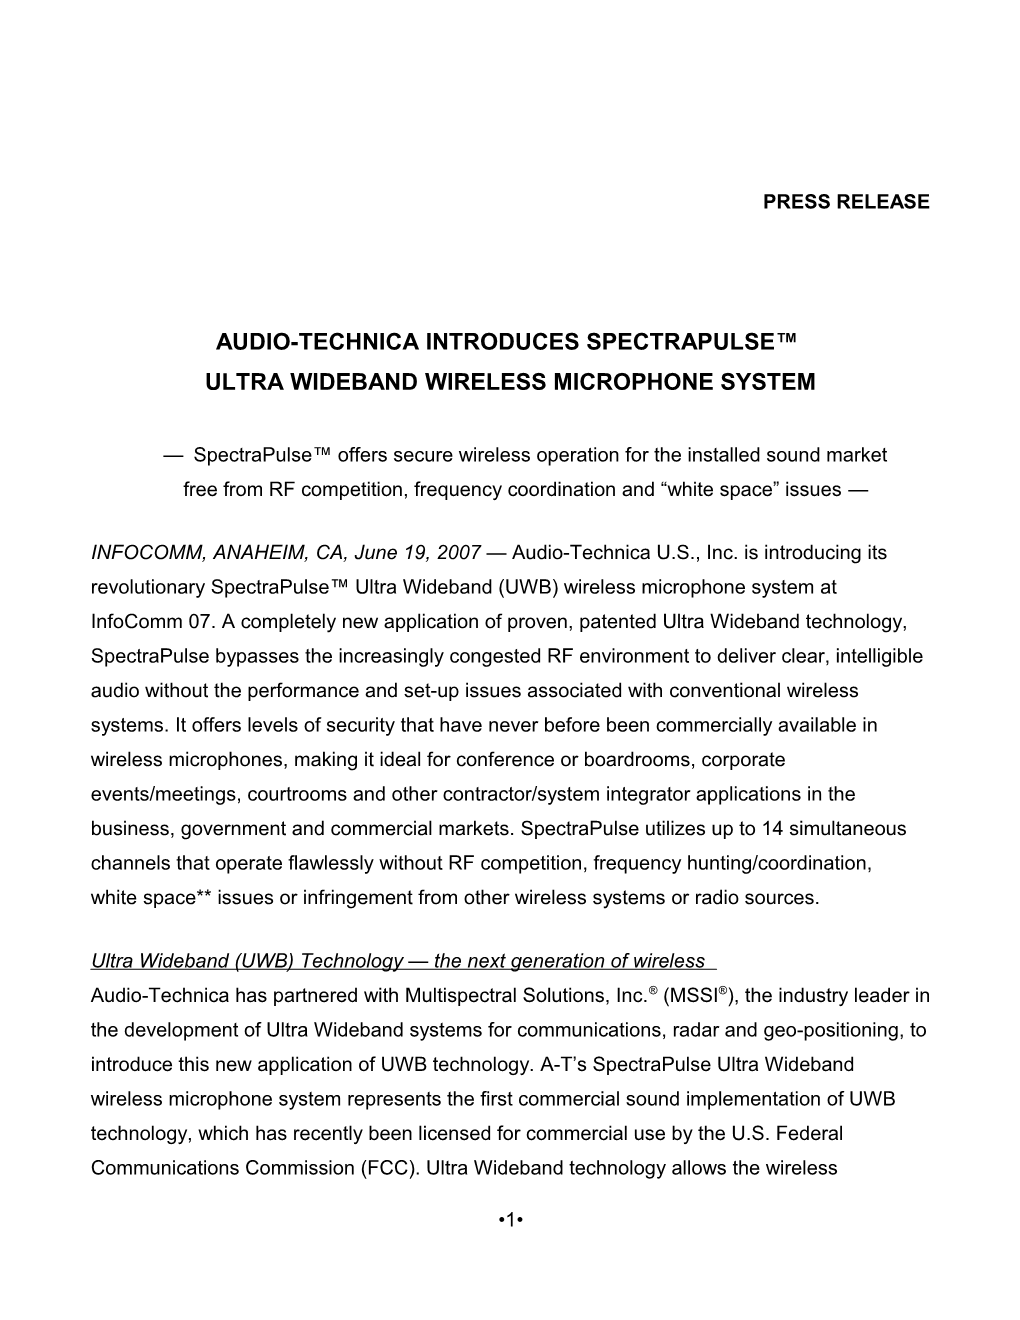 Audio-Technica Introduces Spectrapulse